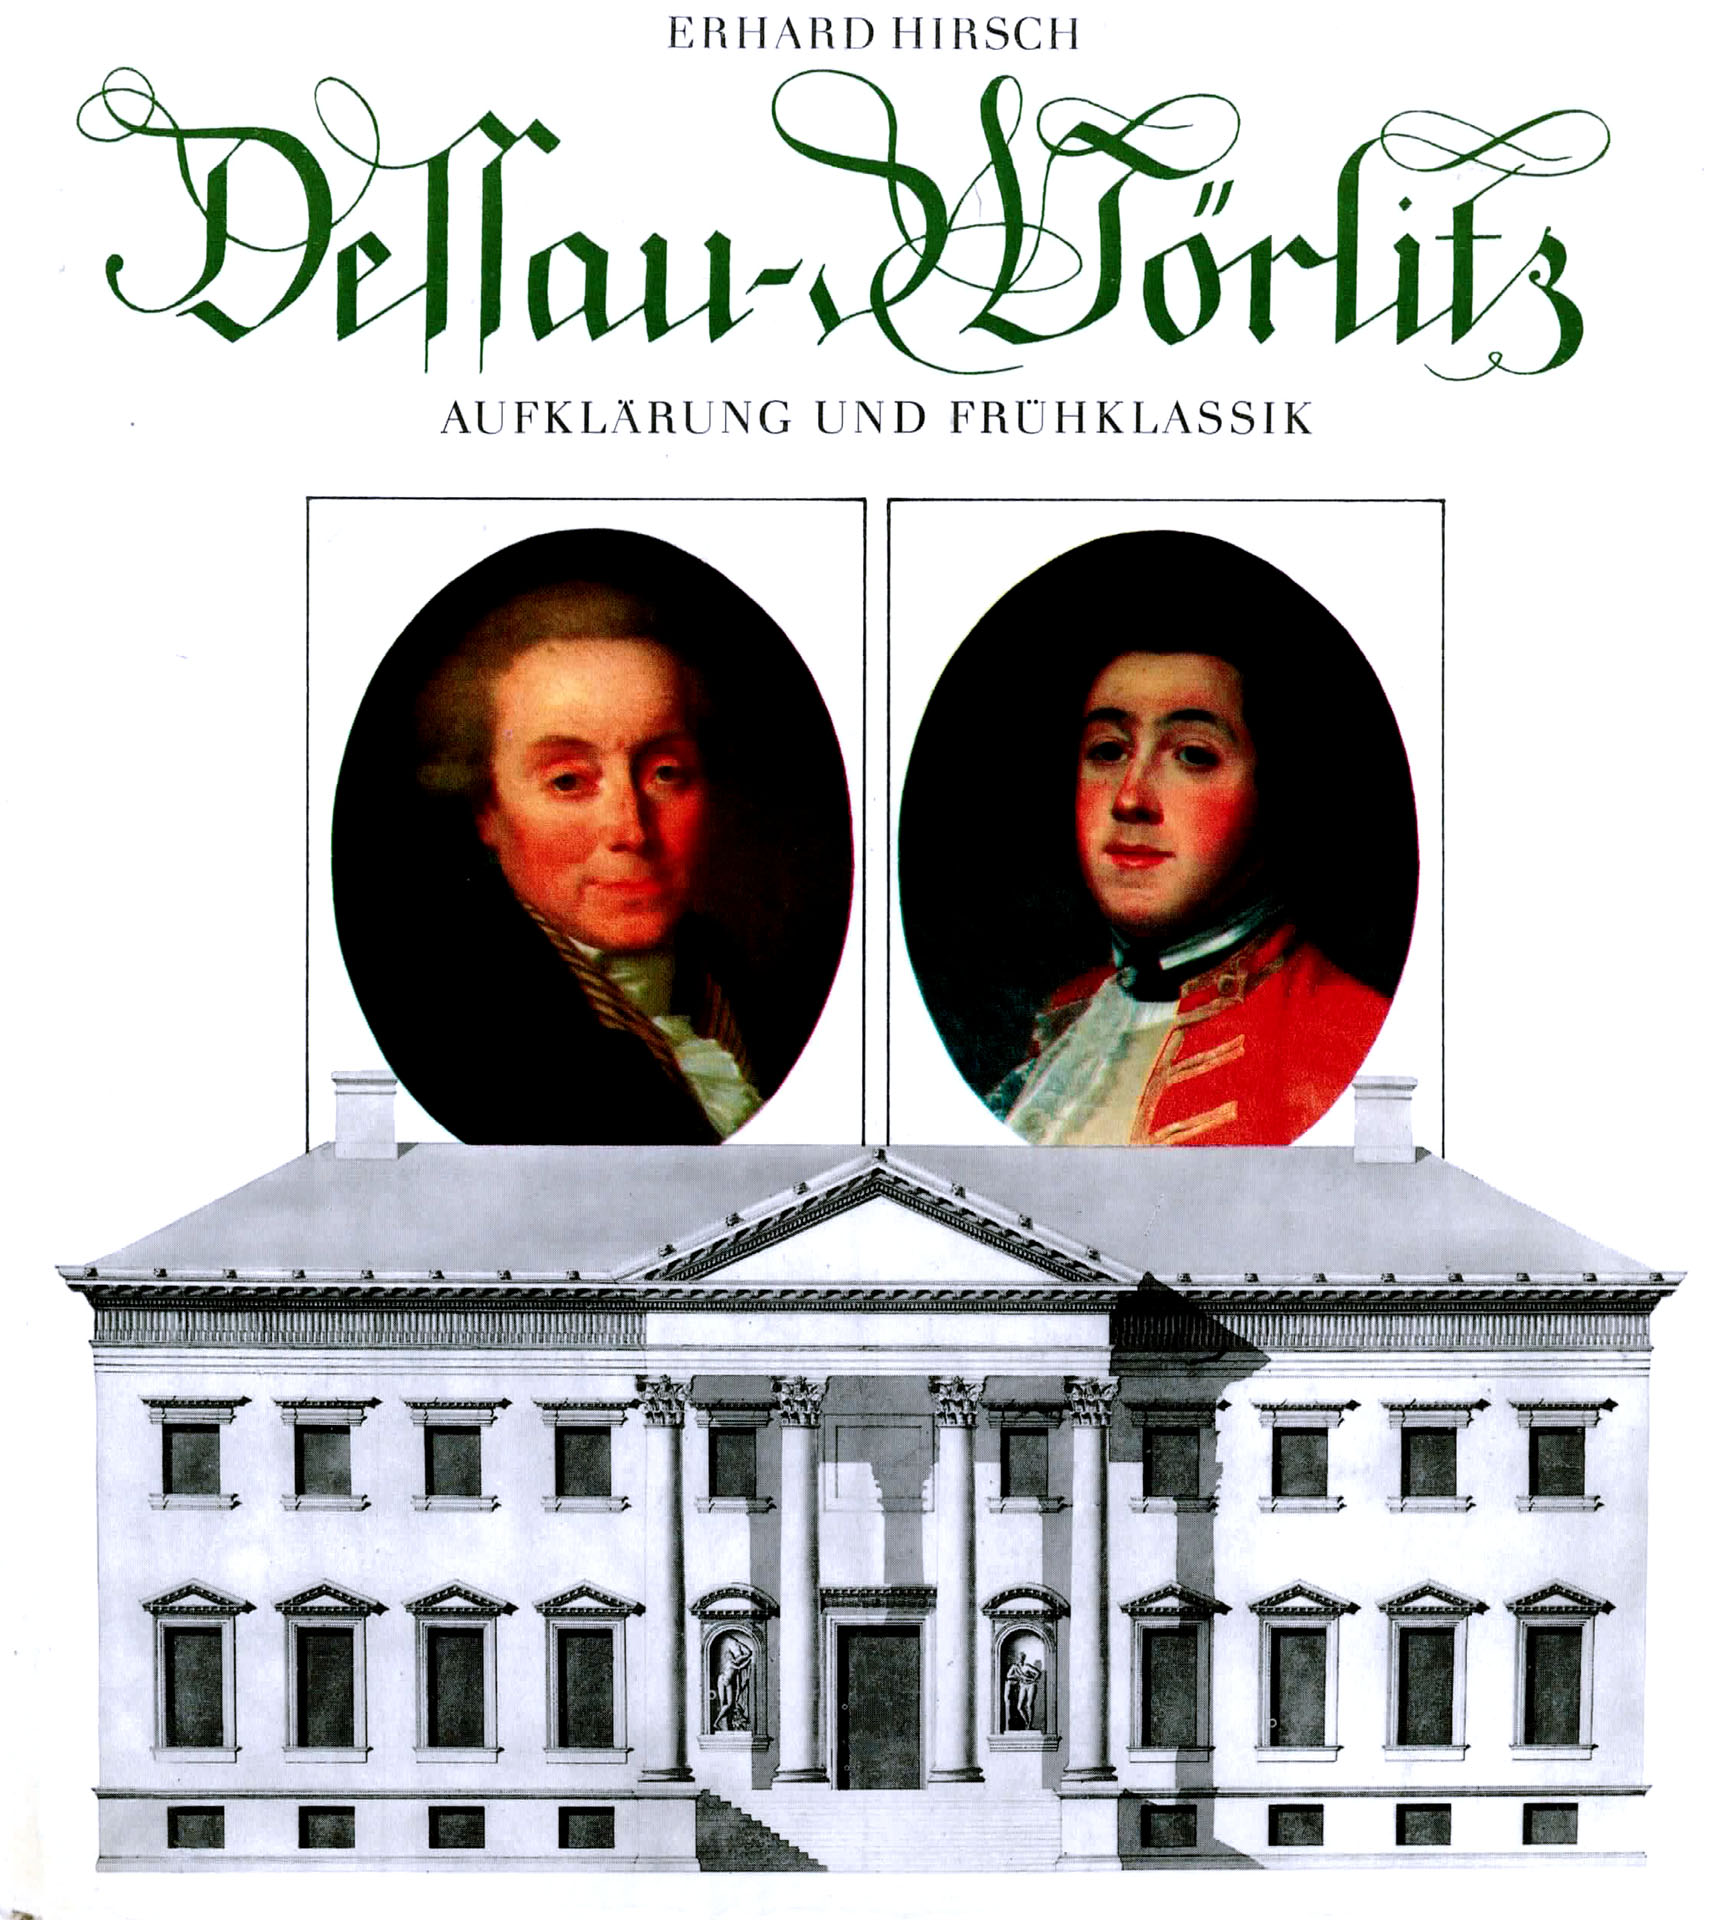 Dessau - Wörlitz - Aufklärung und Frühclassik - Hirsch, Erhard